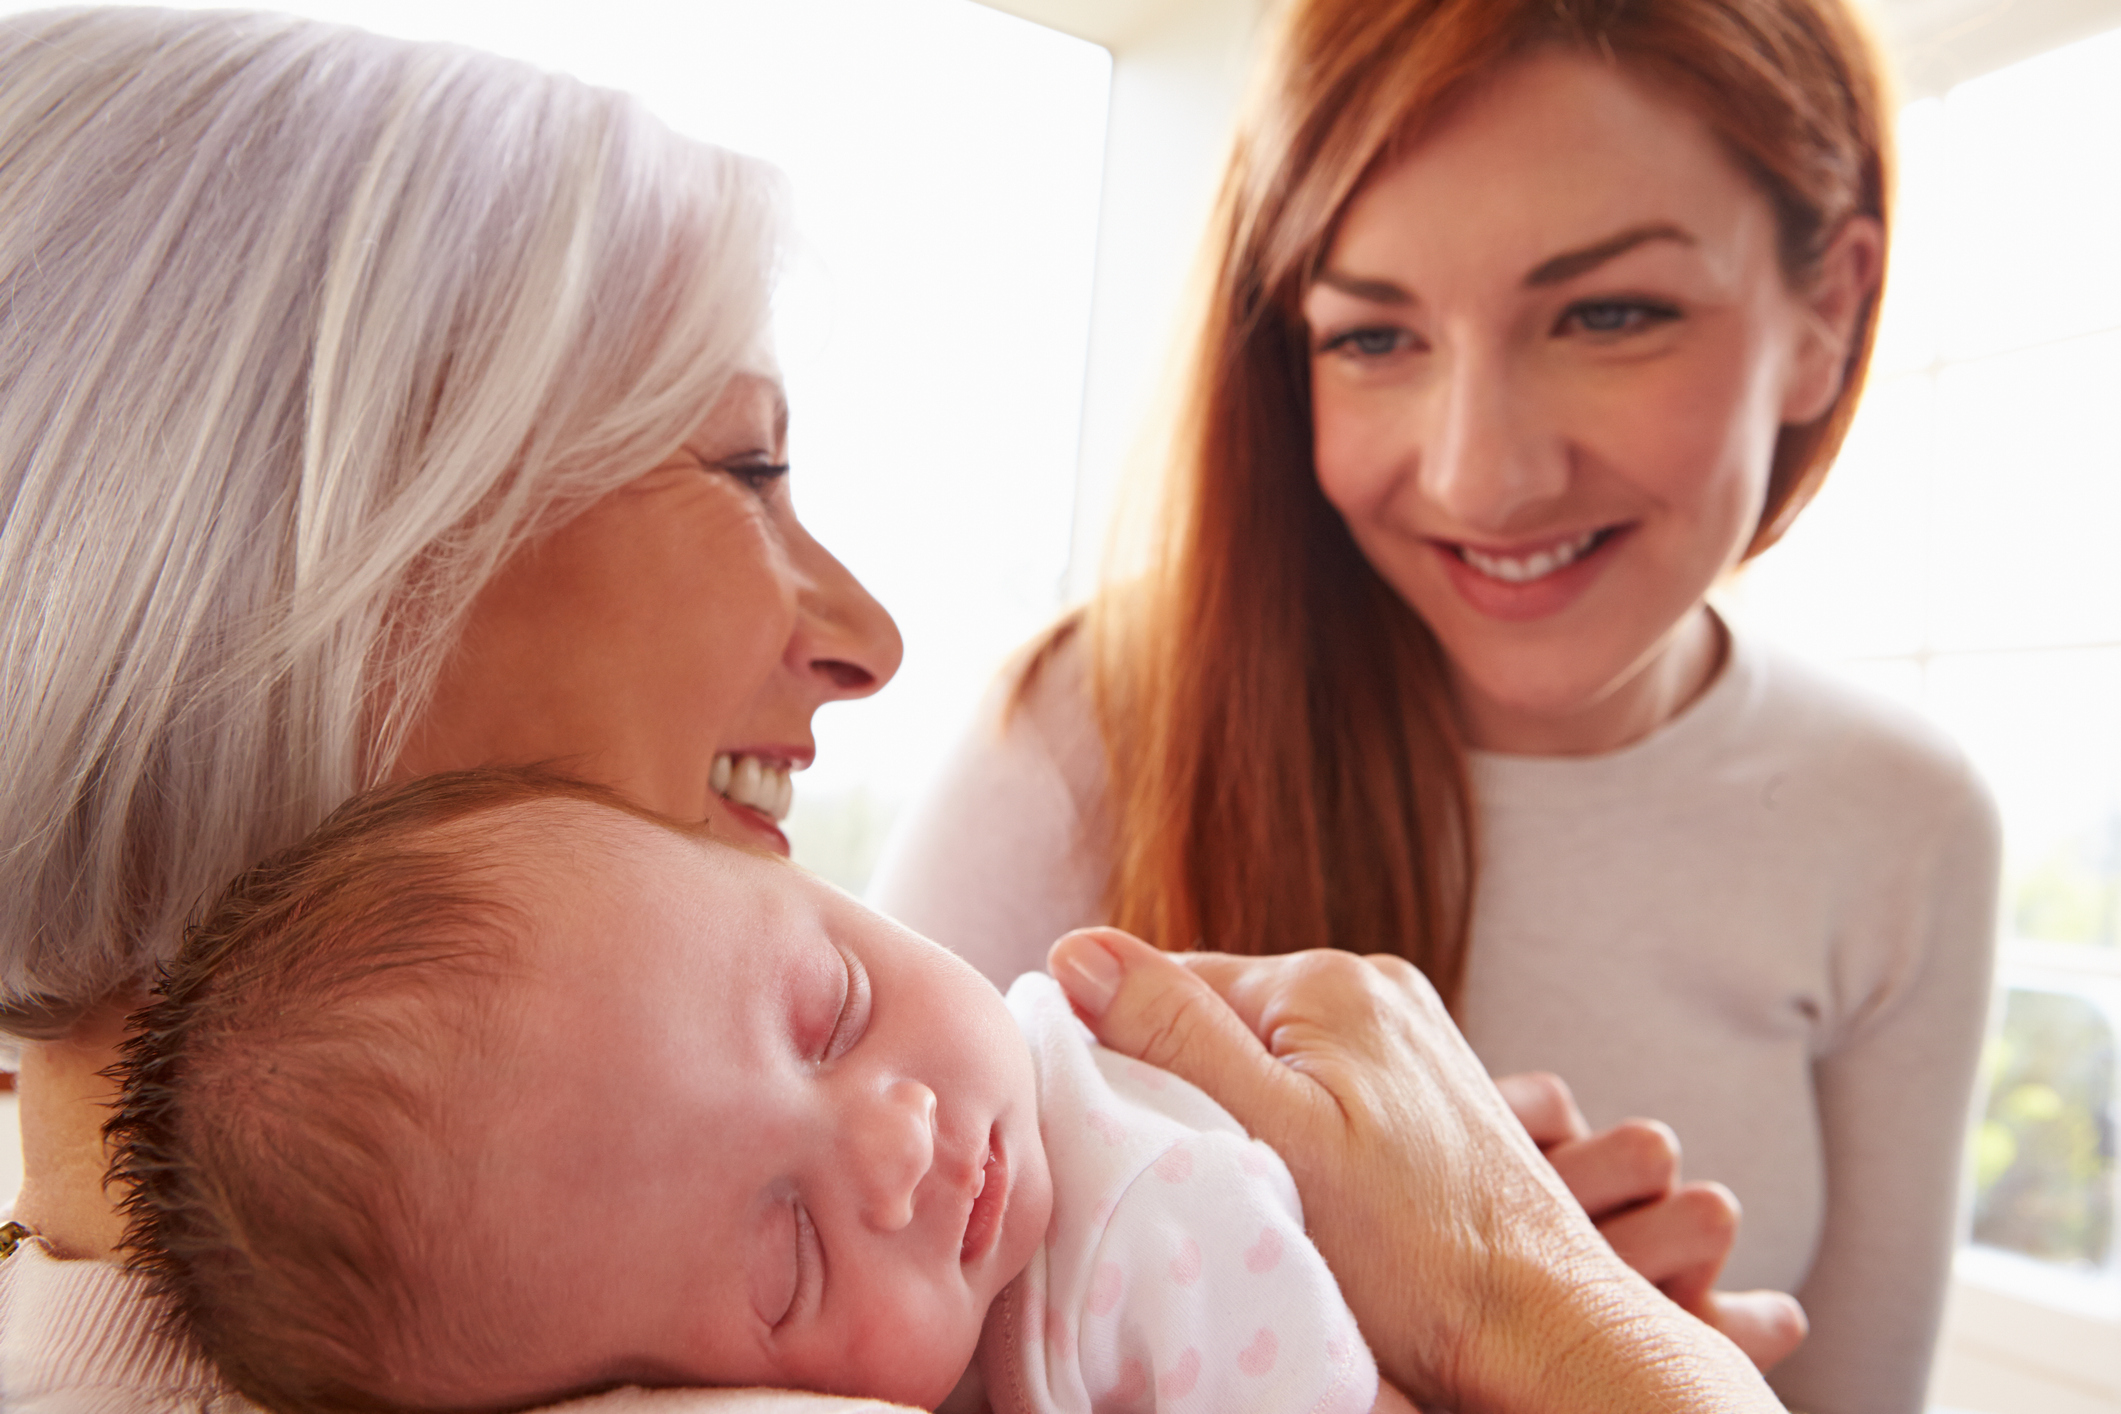 How breastfeeding makes women’s hearts healthier